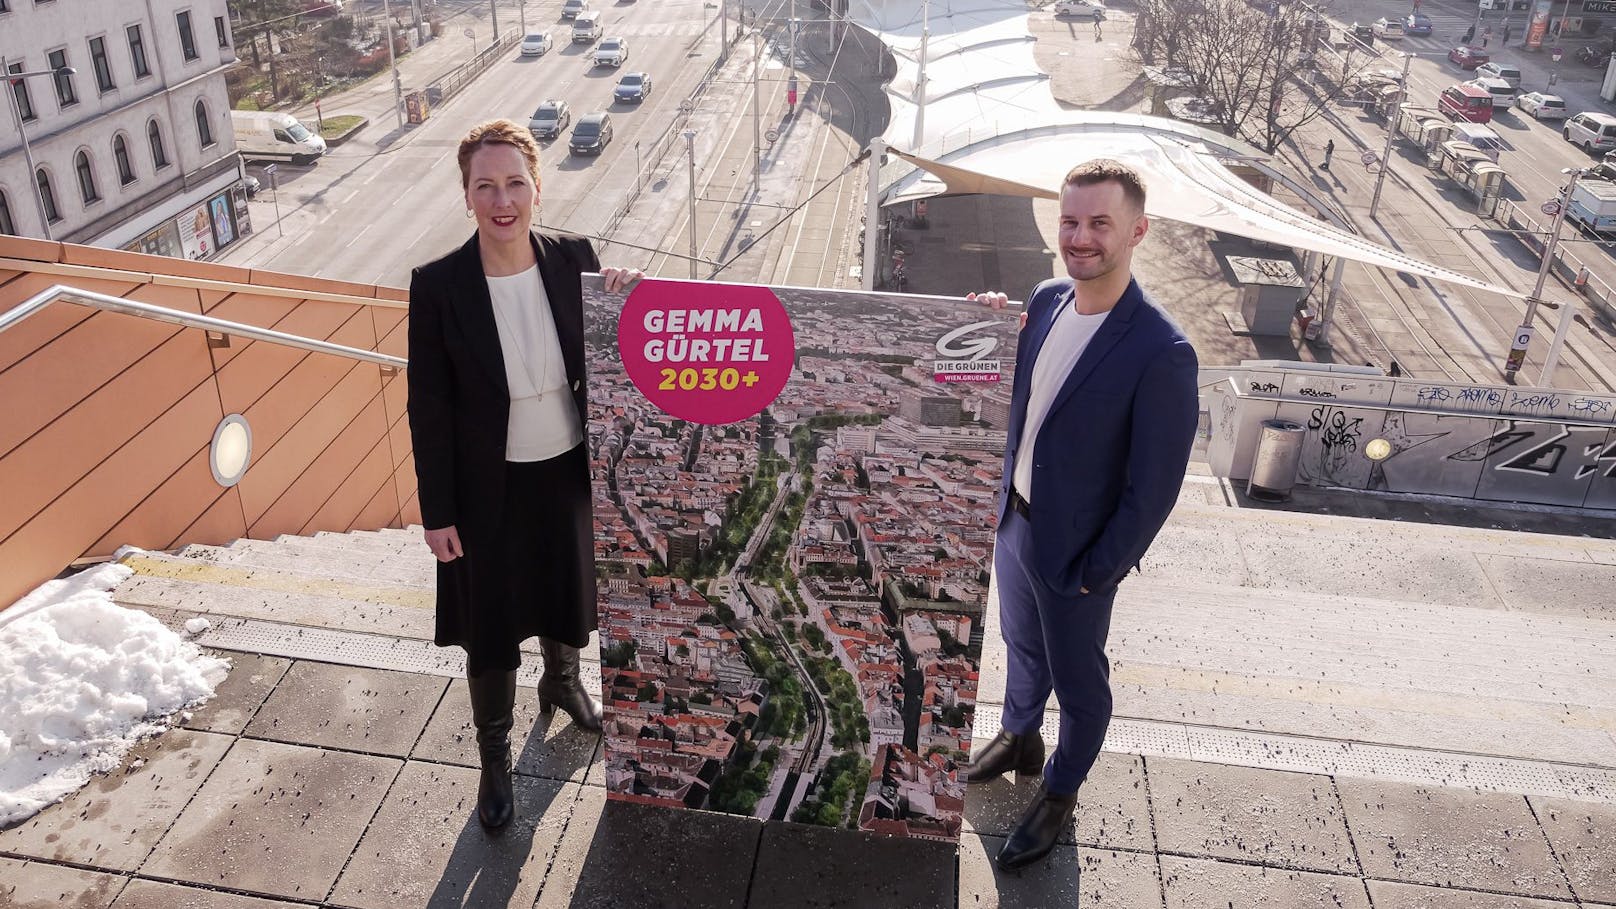 Die beiden Parteivorsitzenden Judith Pühringer und Peter Kraus bei der Präsentation ihres "Gemma Gürtel 2030+"-Plans am Wiener Gürtel.